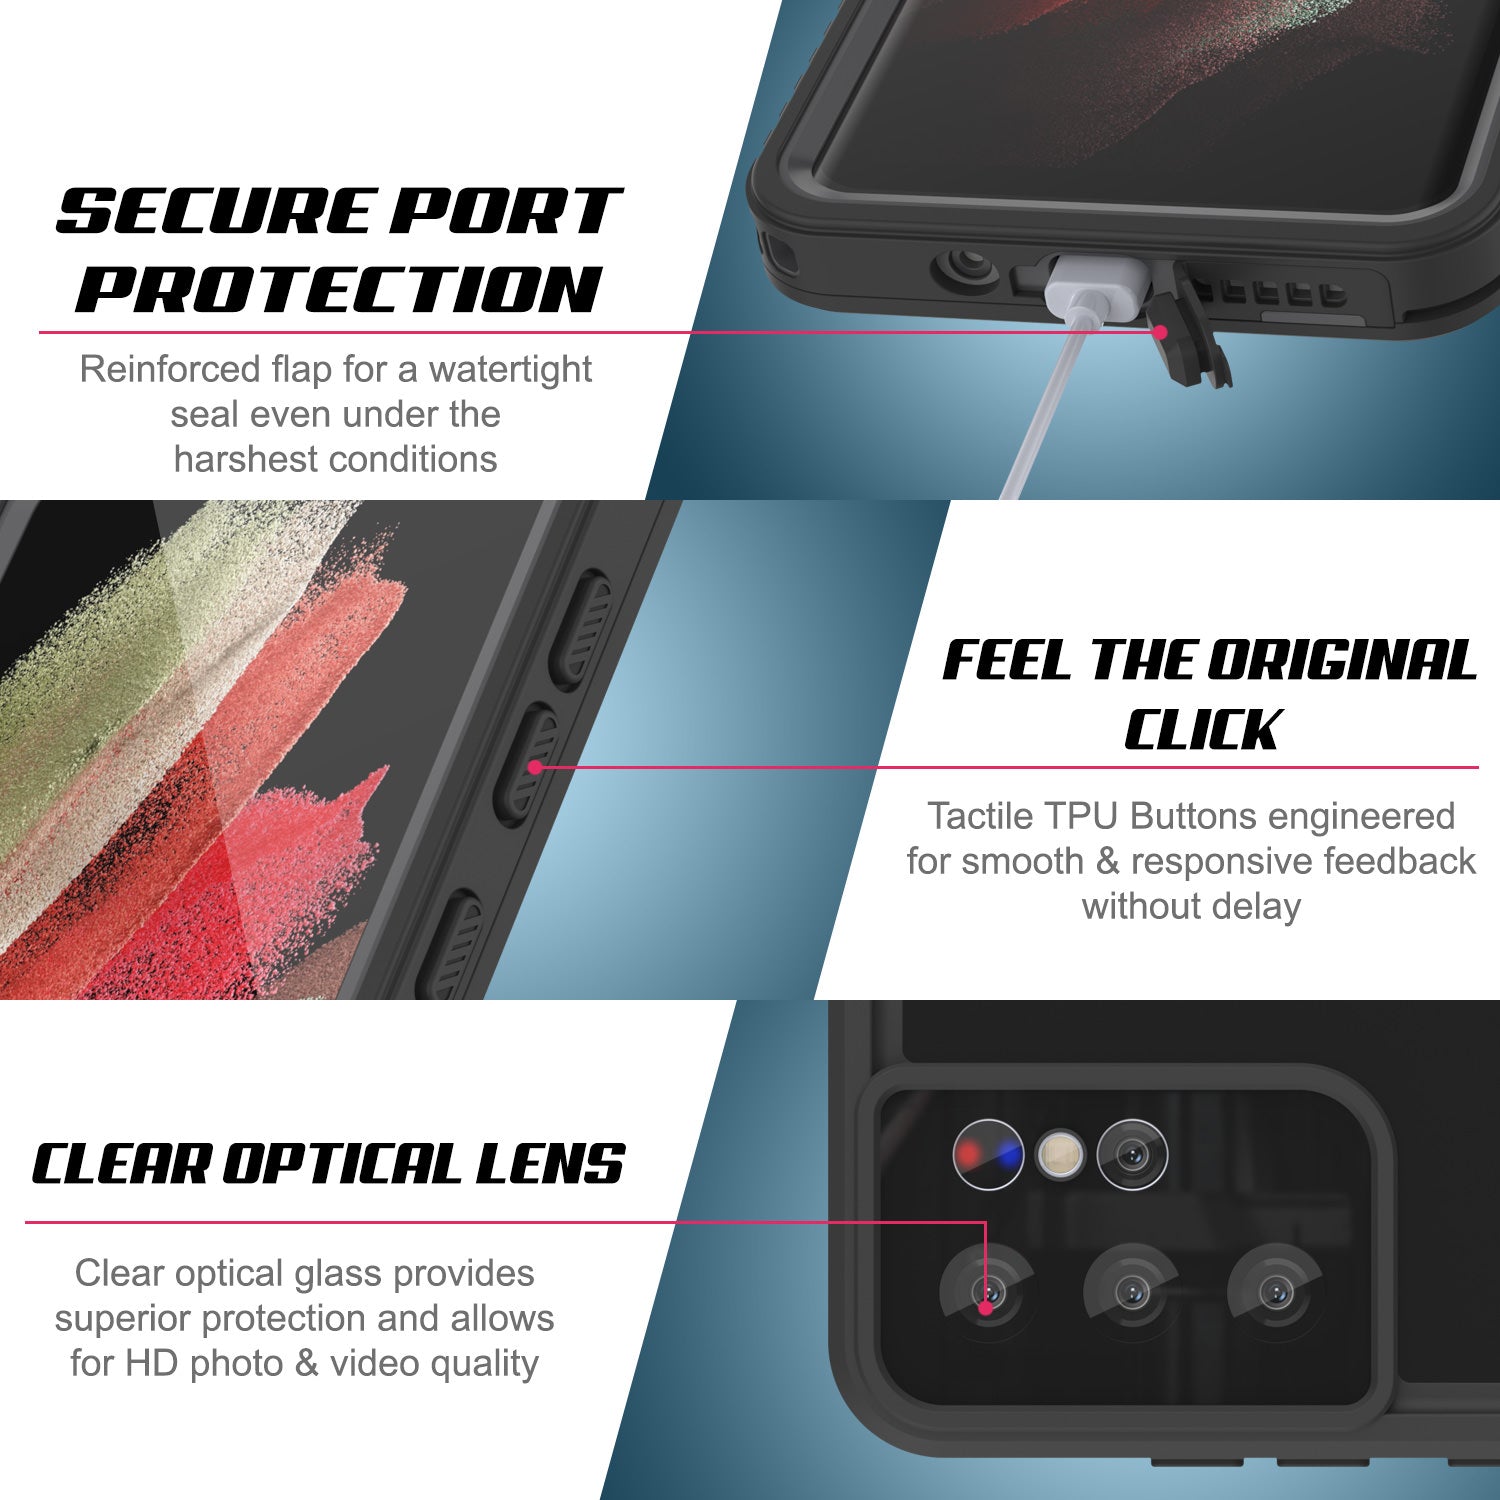 مكواة لونا Galaxy S21 Ultra Waterproof Case PunkCase StudStar Black Thin 6.6ft Underwater IP68 Shock/Snow Proof